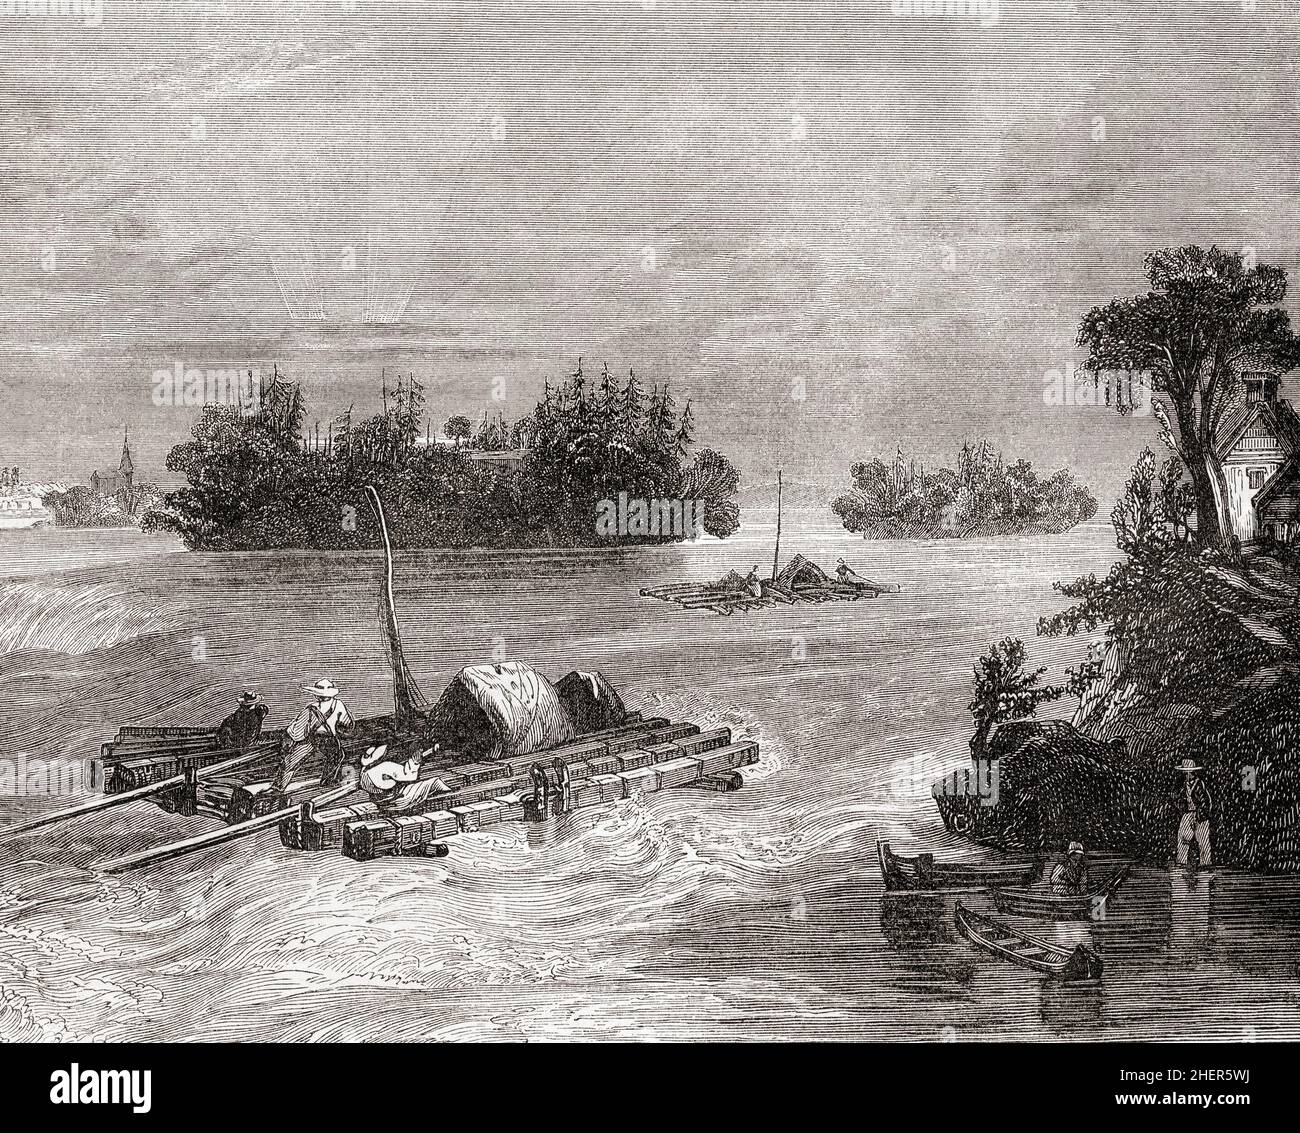 Blick auf den Ohio River, Nordamerika, 19th. Jahrhundert. Aus Cassells Illustrated History of England, veröffentlicht um 1890. Stockfoto